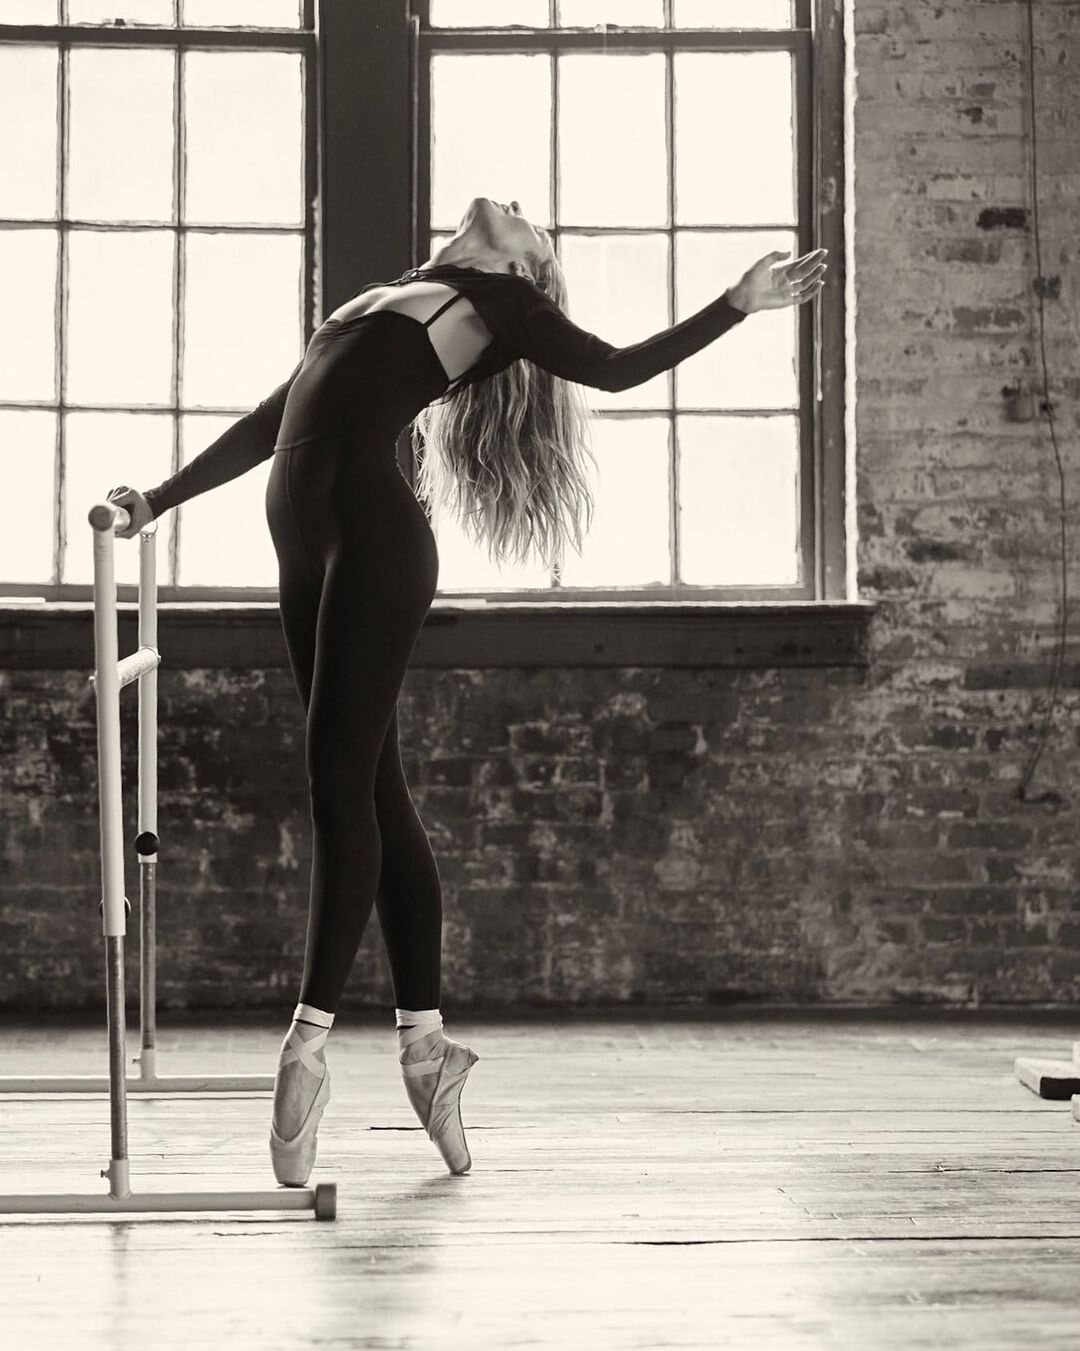 Candice Swanepoel en una campaña de Tropic of C haciendo ballet | Foto: Instagram @tropicofc